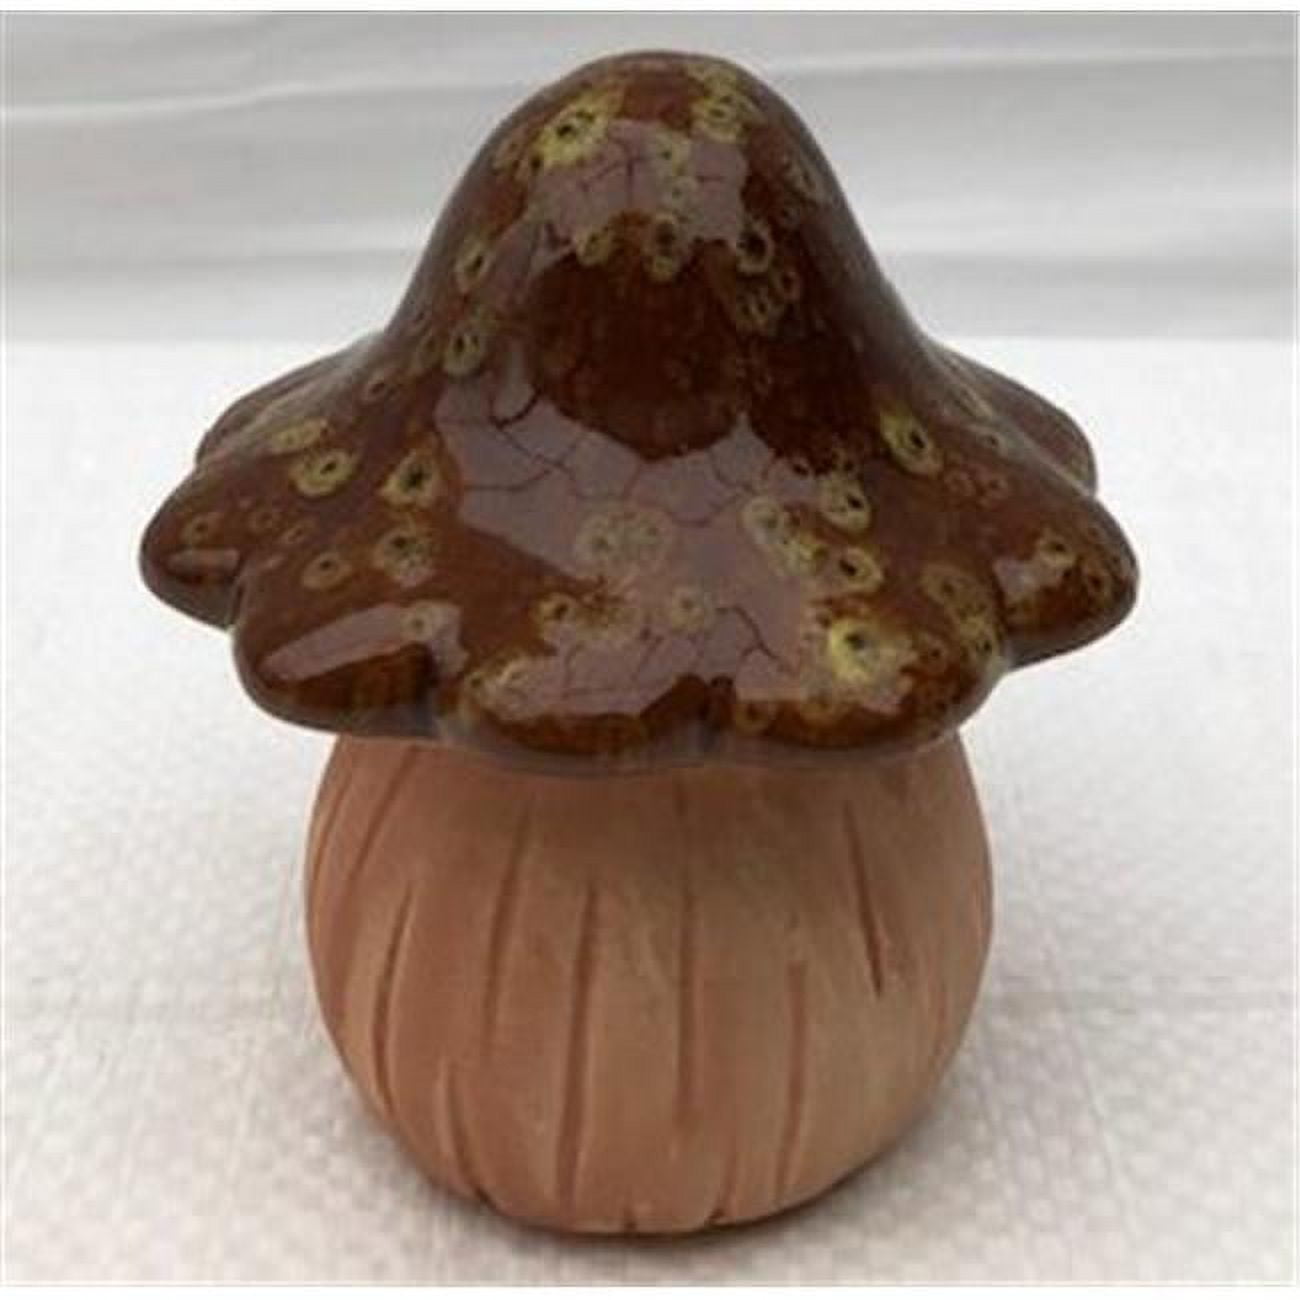 Picture of Bonsai Boy e3490 4.5 in. Miniature Ceramic Mushroom Figurine